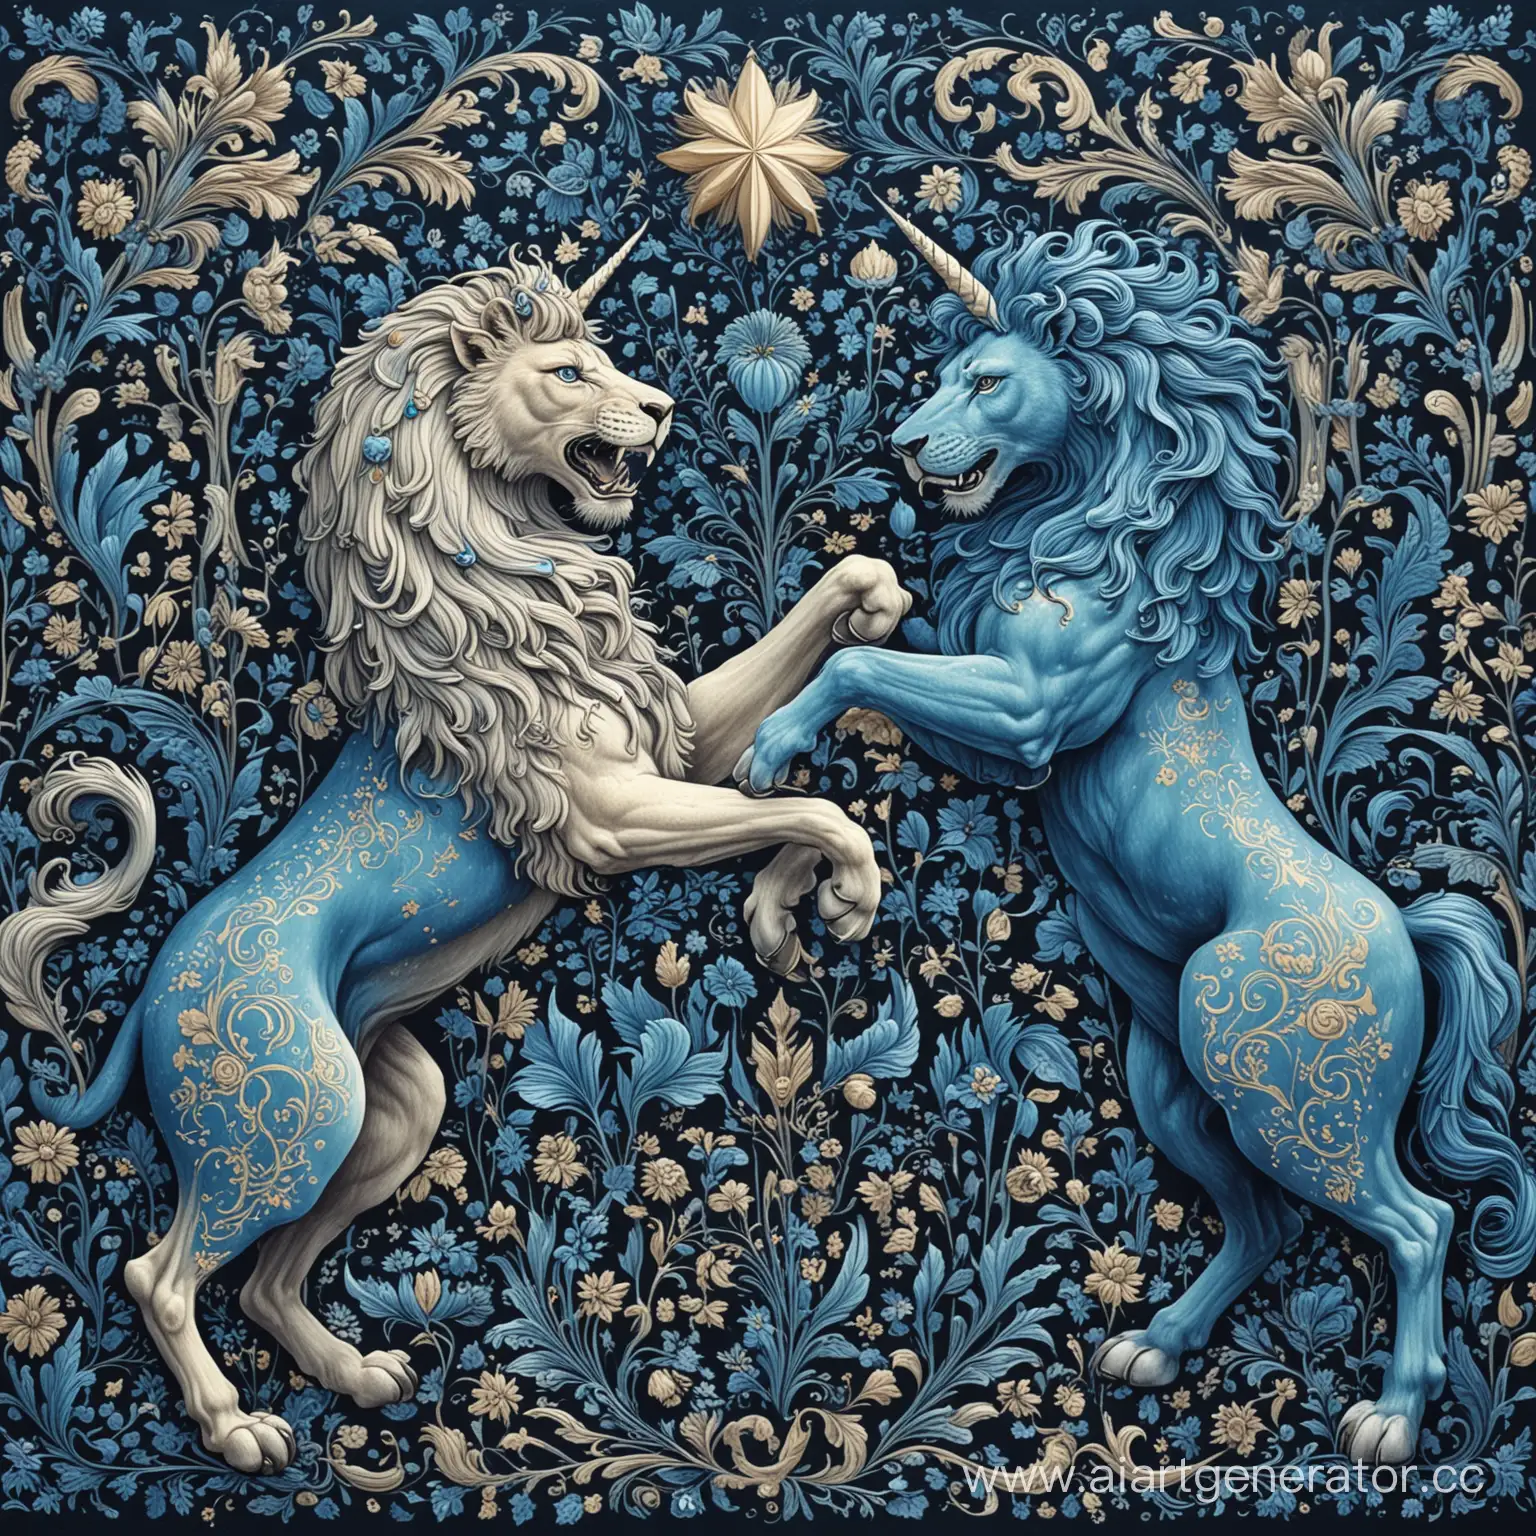 Лев против единорога, синие оттенки, русский стиль
